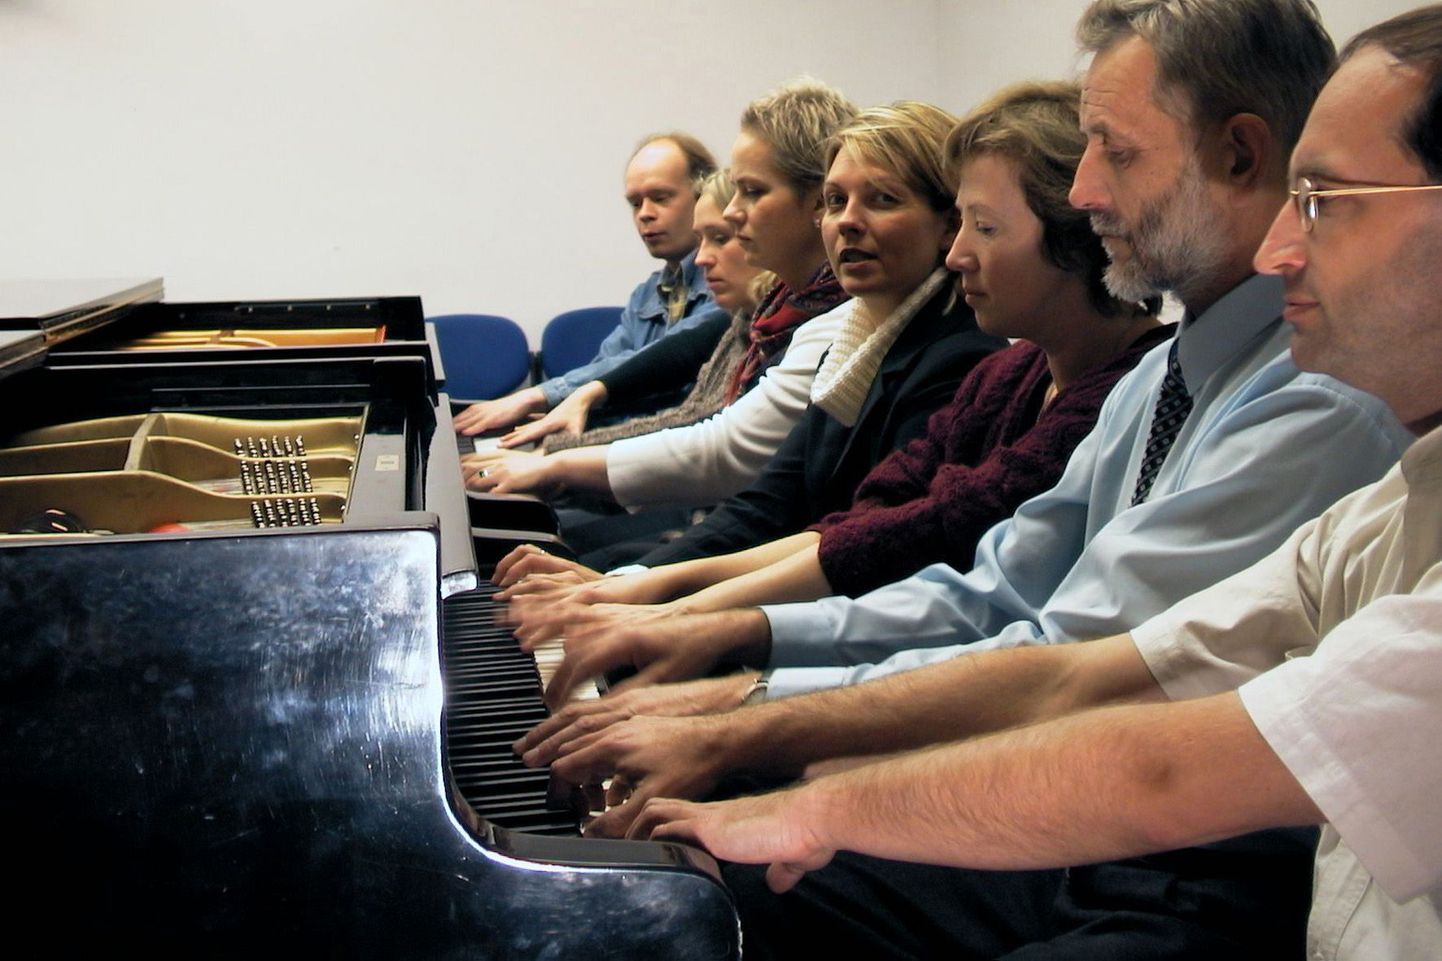 Juba homme õhtul  astuvad Valga muusikakoolis rahva ette kaheksa suurepärast pianisti, kes on koondunud kollektiivi nimega Klaveriorkester. Varem duodena esinenud klaverikunstnikud musitseerivad üheskoos juba üle kümne aasta.